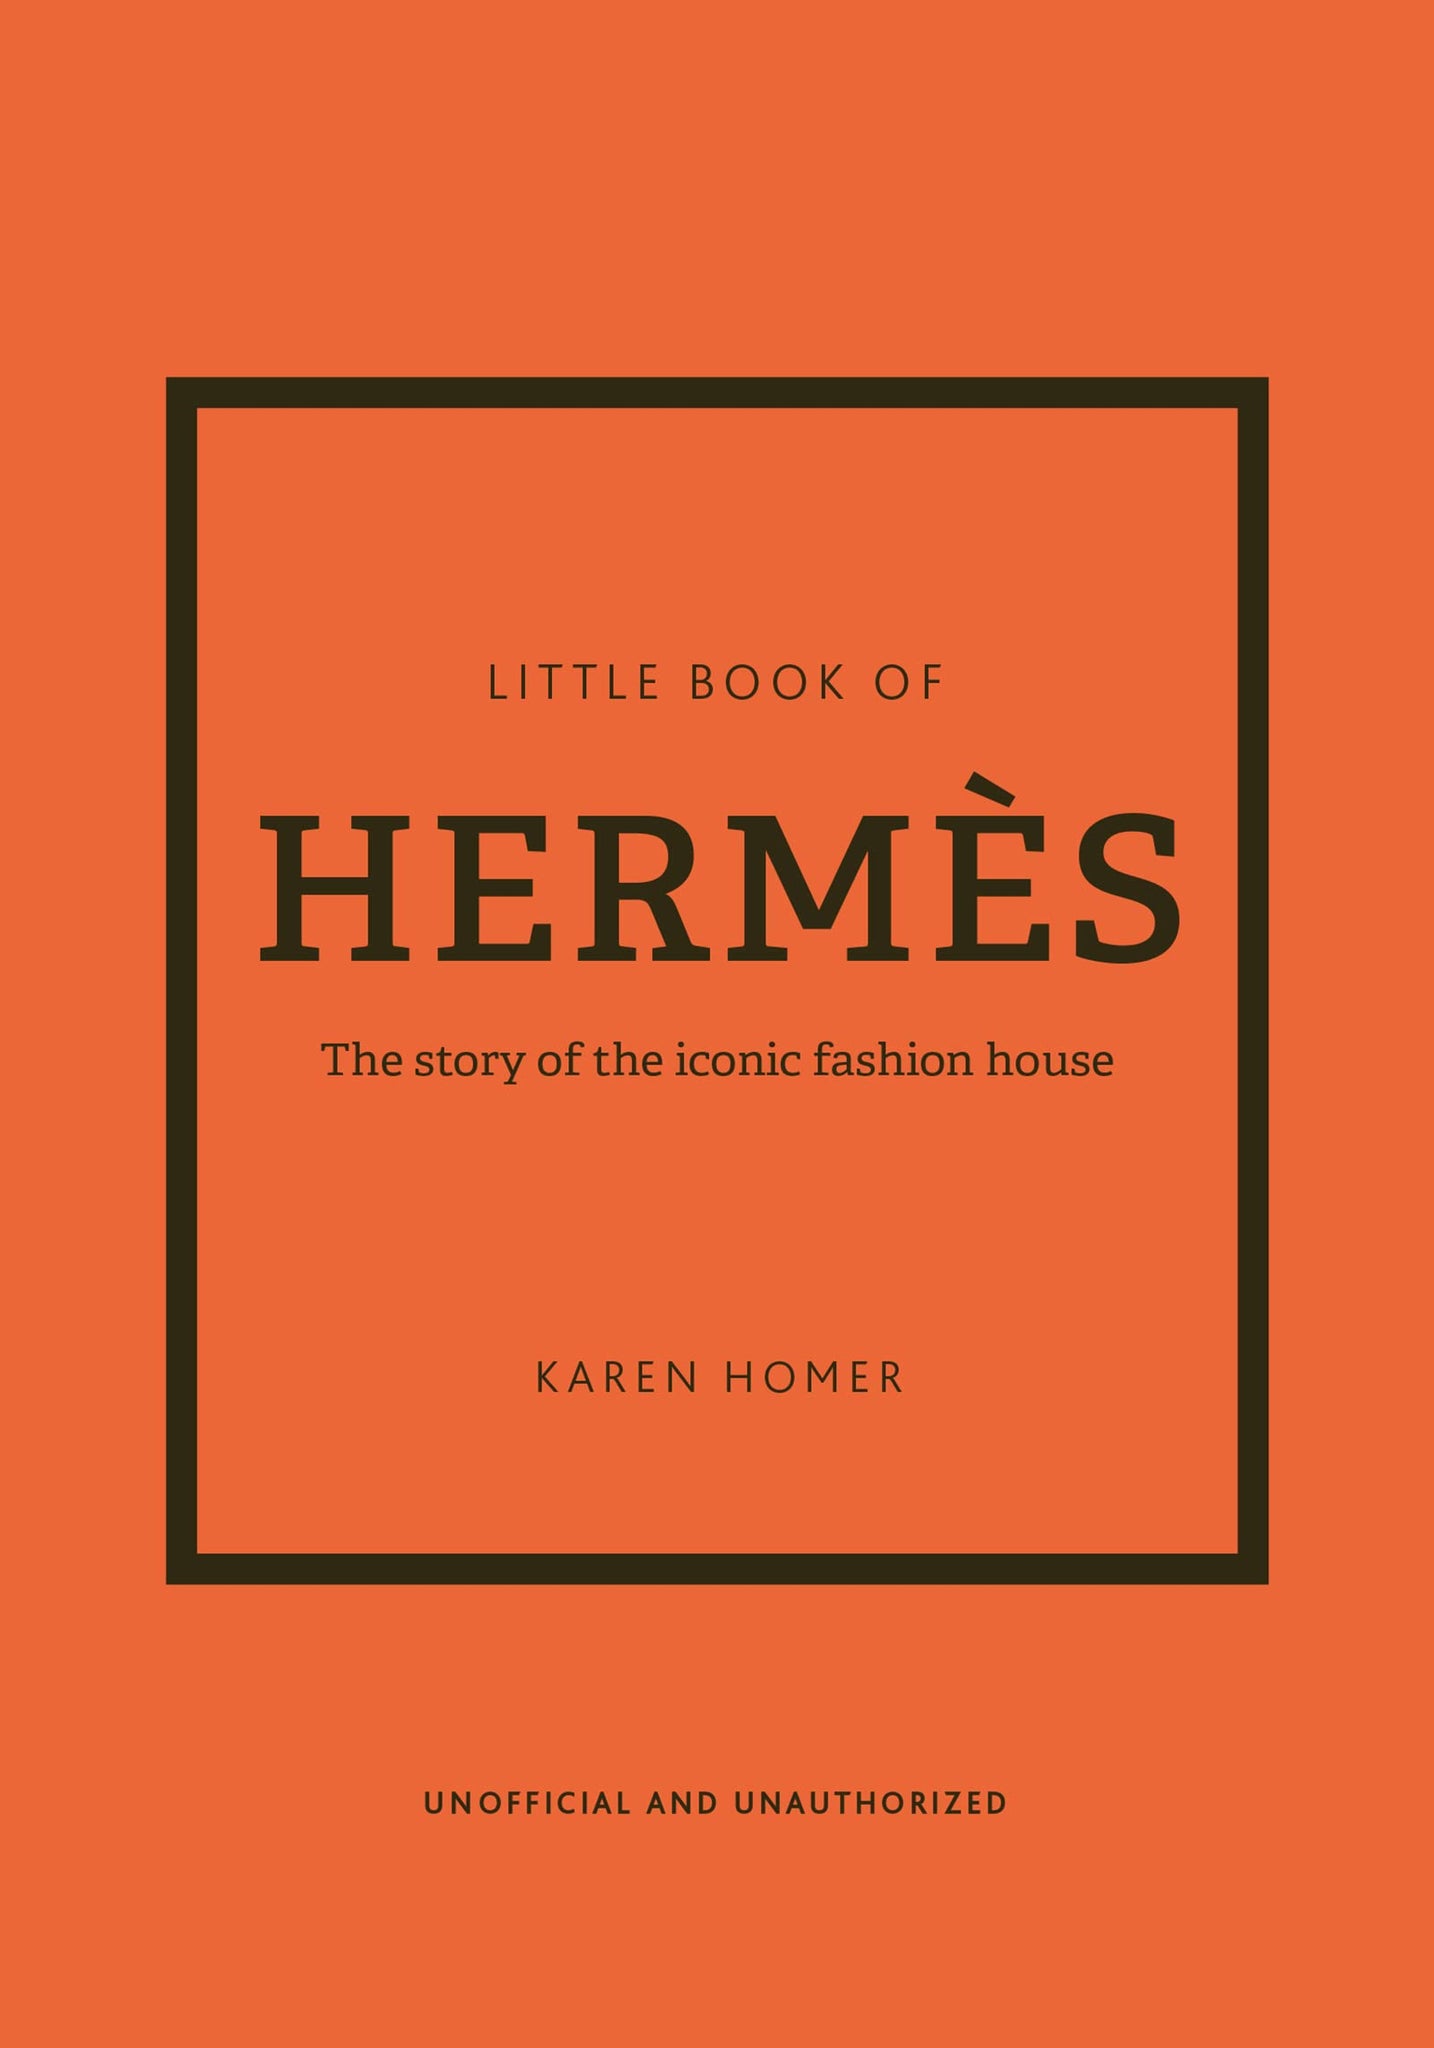 LITTLE BOOK OF HERMES, coffee table book sobre esta famosa marca de moda